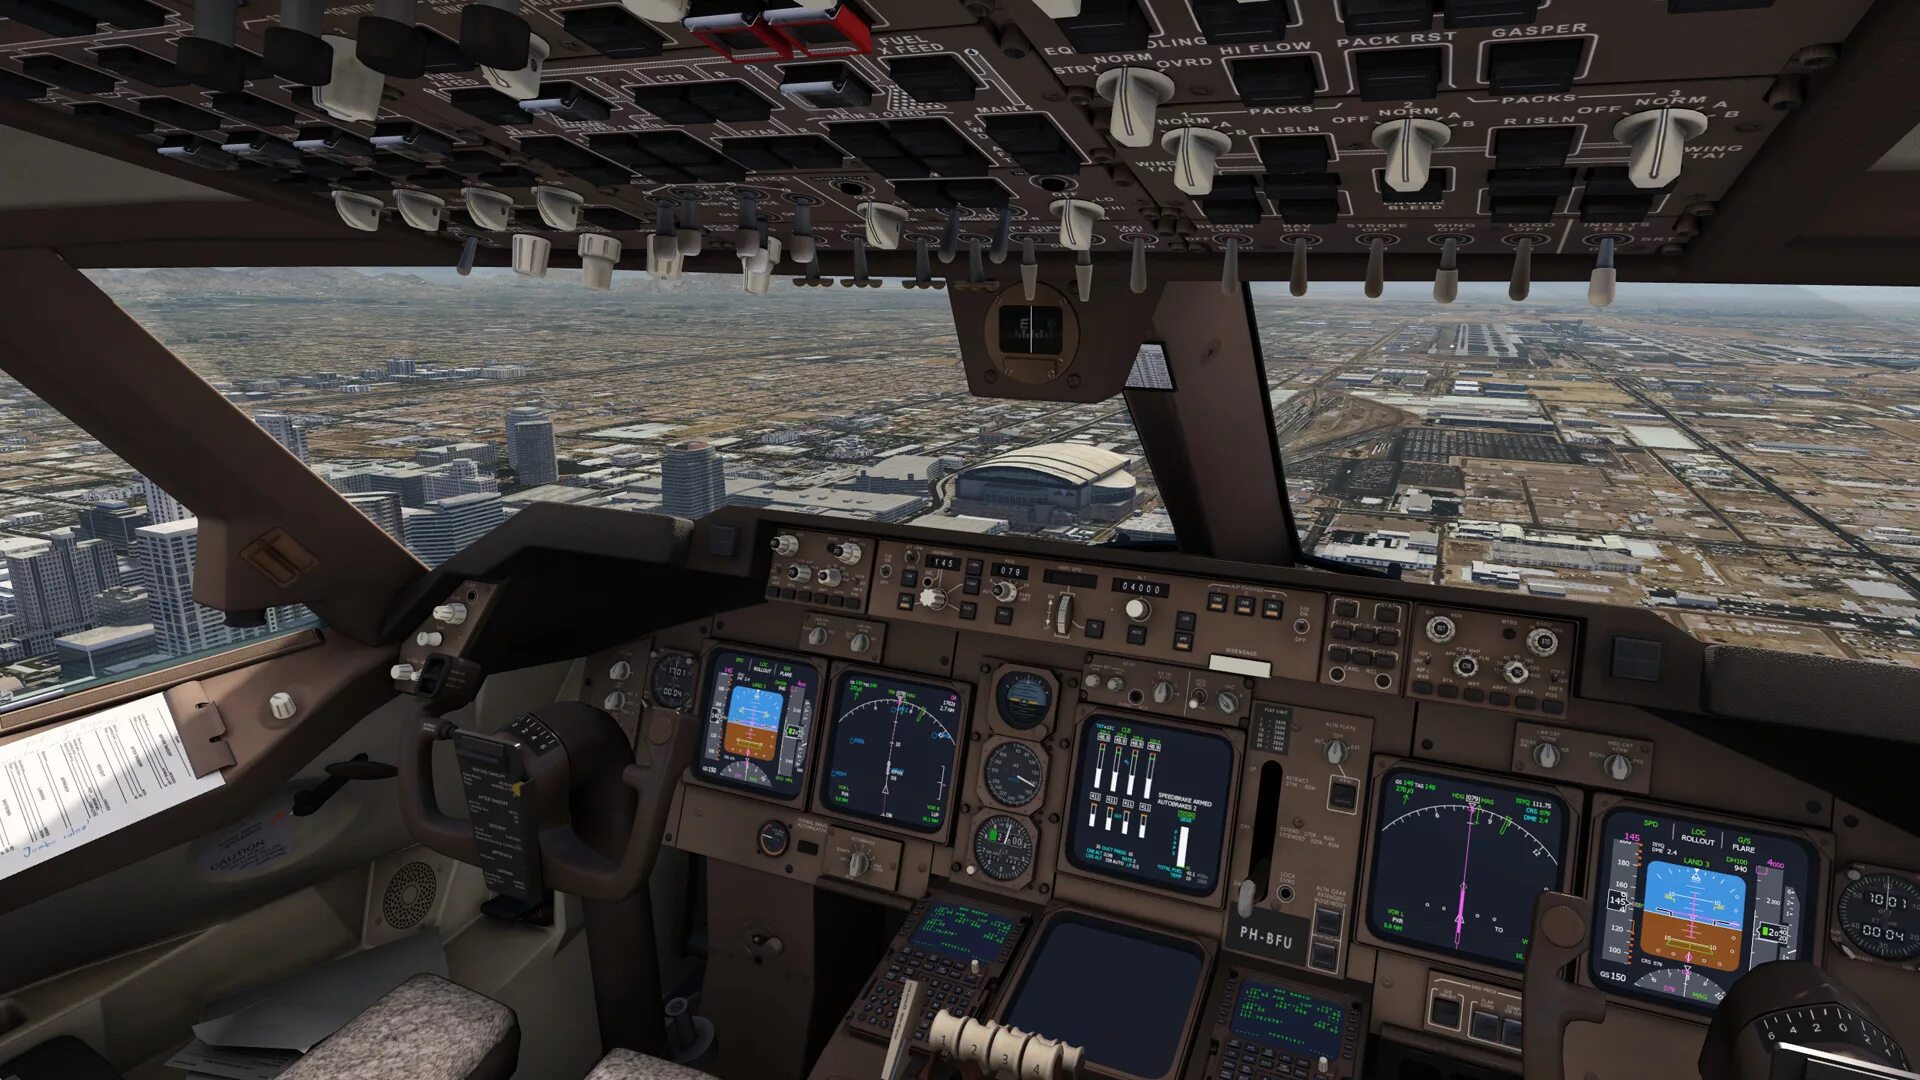 Майкрософт флайт симулятор самолеты. Aerofly 2 Flight Simulator. Microsoft Flight Simulator кабина. Aerofly FS 2023 кабина. Microsoft Flight Simulator кабина пилота.